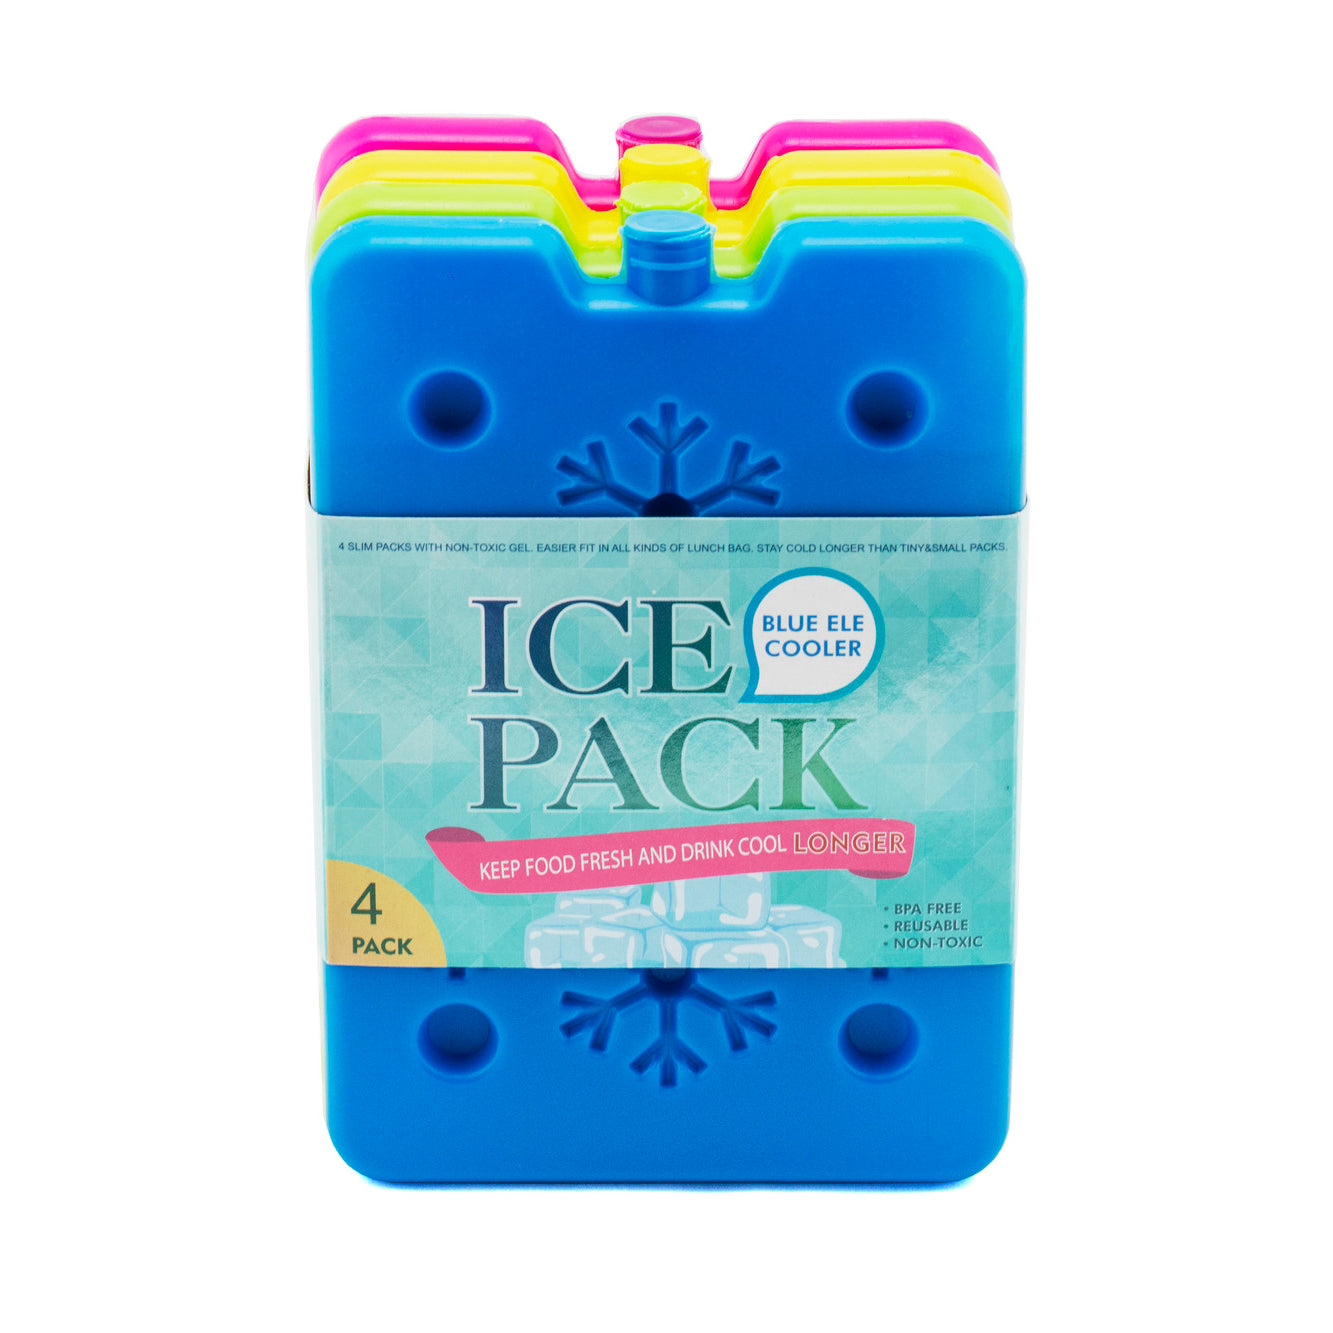 Blue Ele Compact Ice Packs